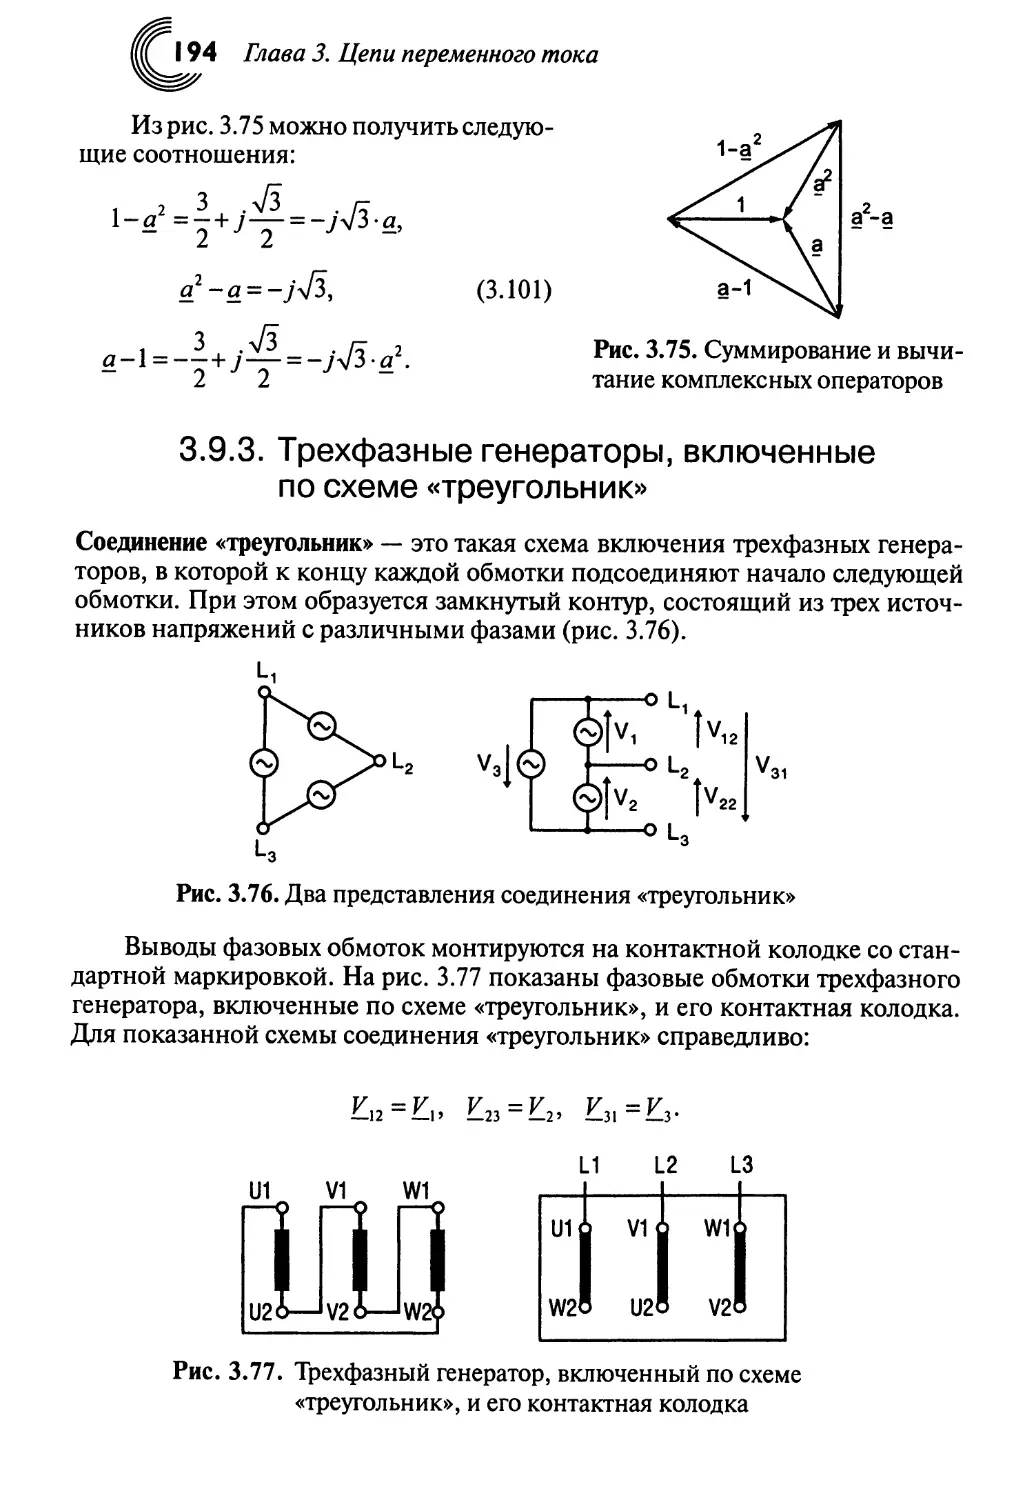 3.9.3. Трехфазные генераторы, включенные по схеме «треугольник»